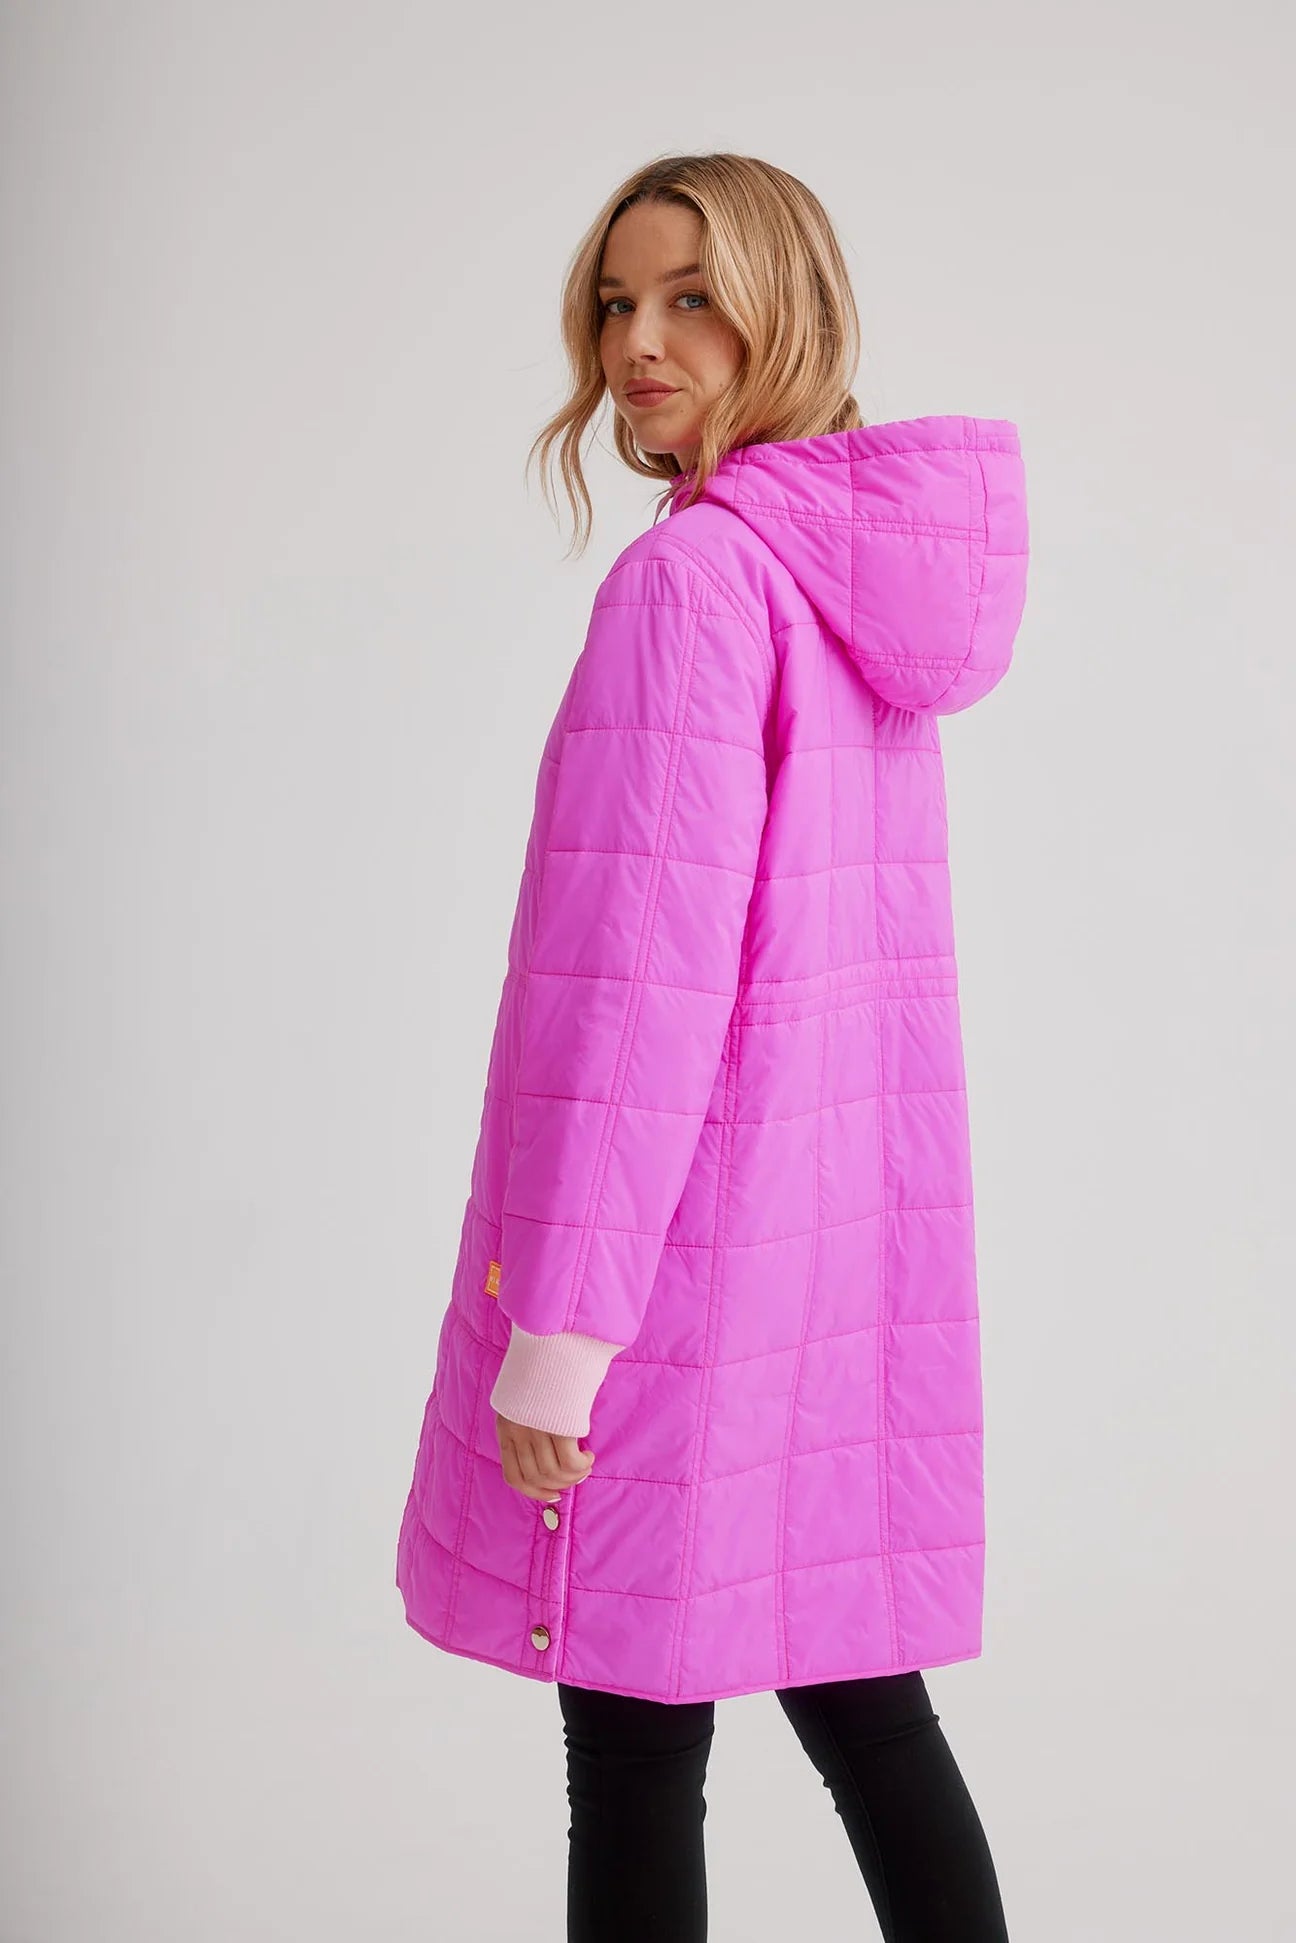 Nikki Jones Passion Pink Coat